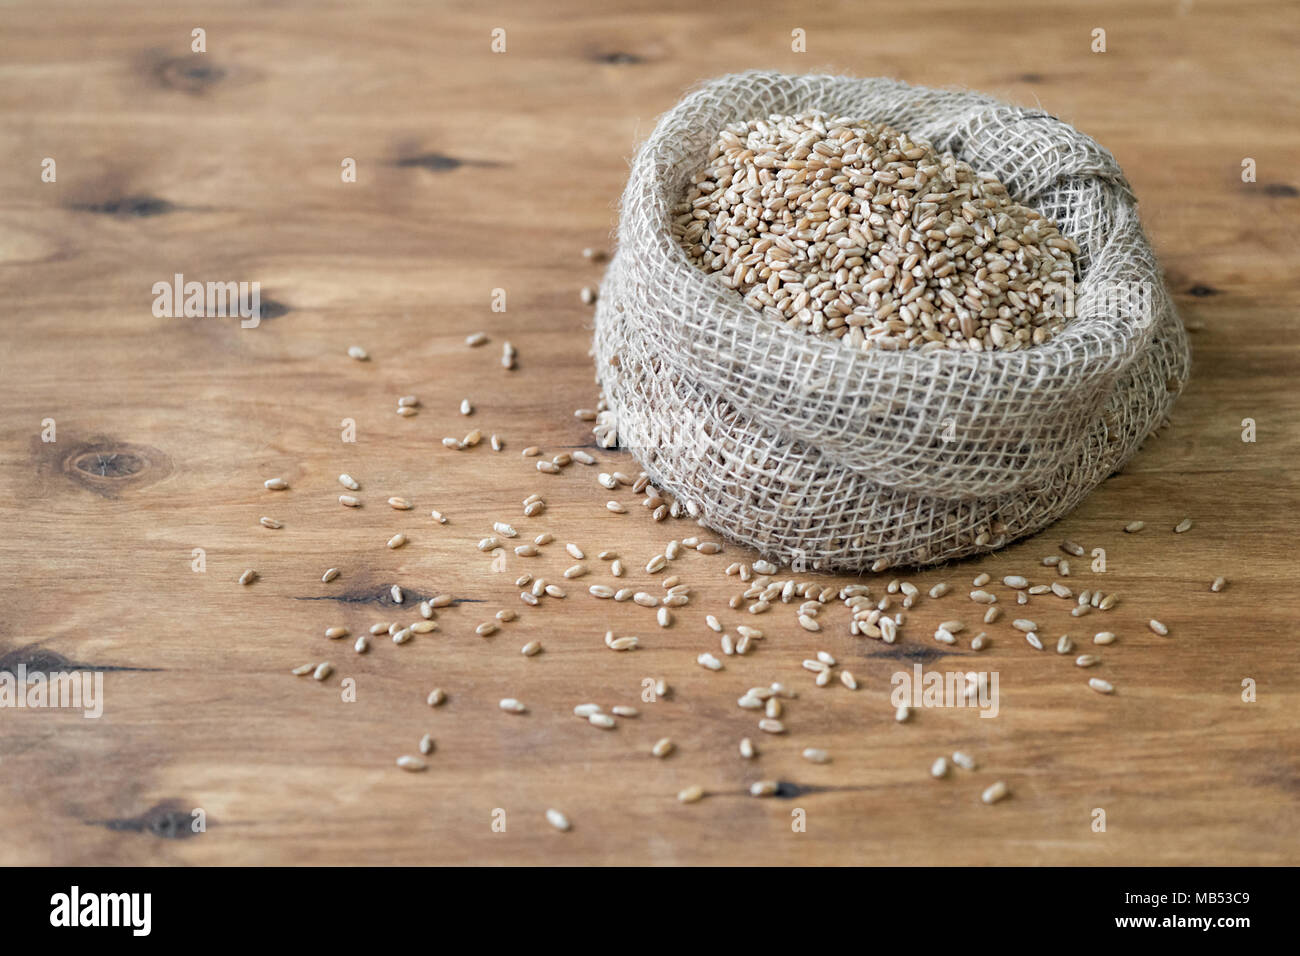 Sur la table se trouve un sac de grain. Le blé est dispersé autour de la table. Chasse d'automne. Banque D'Images